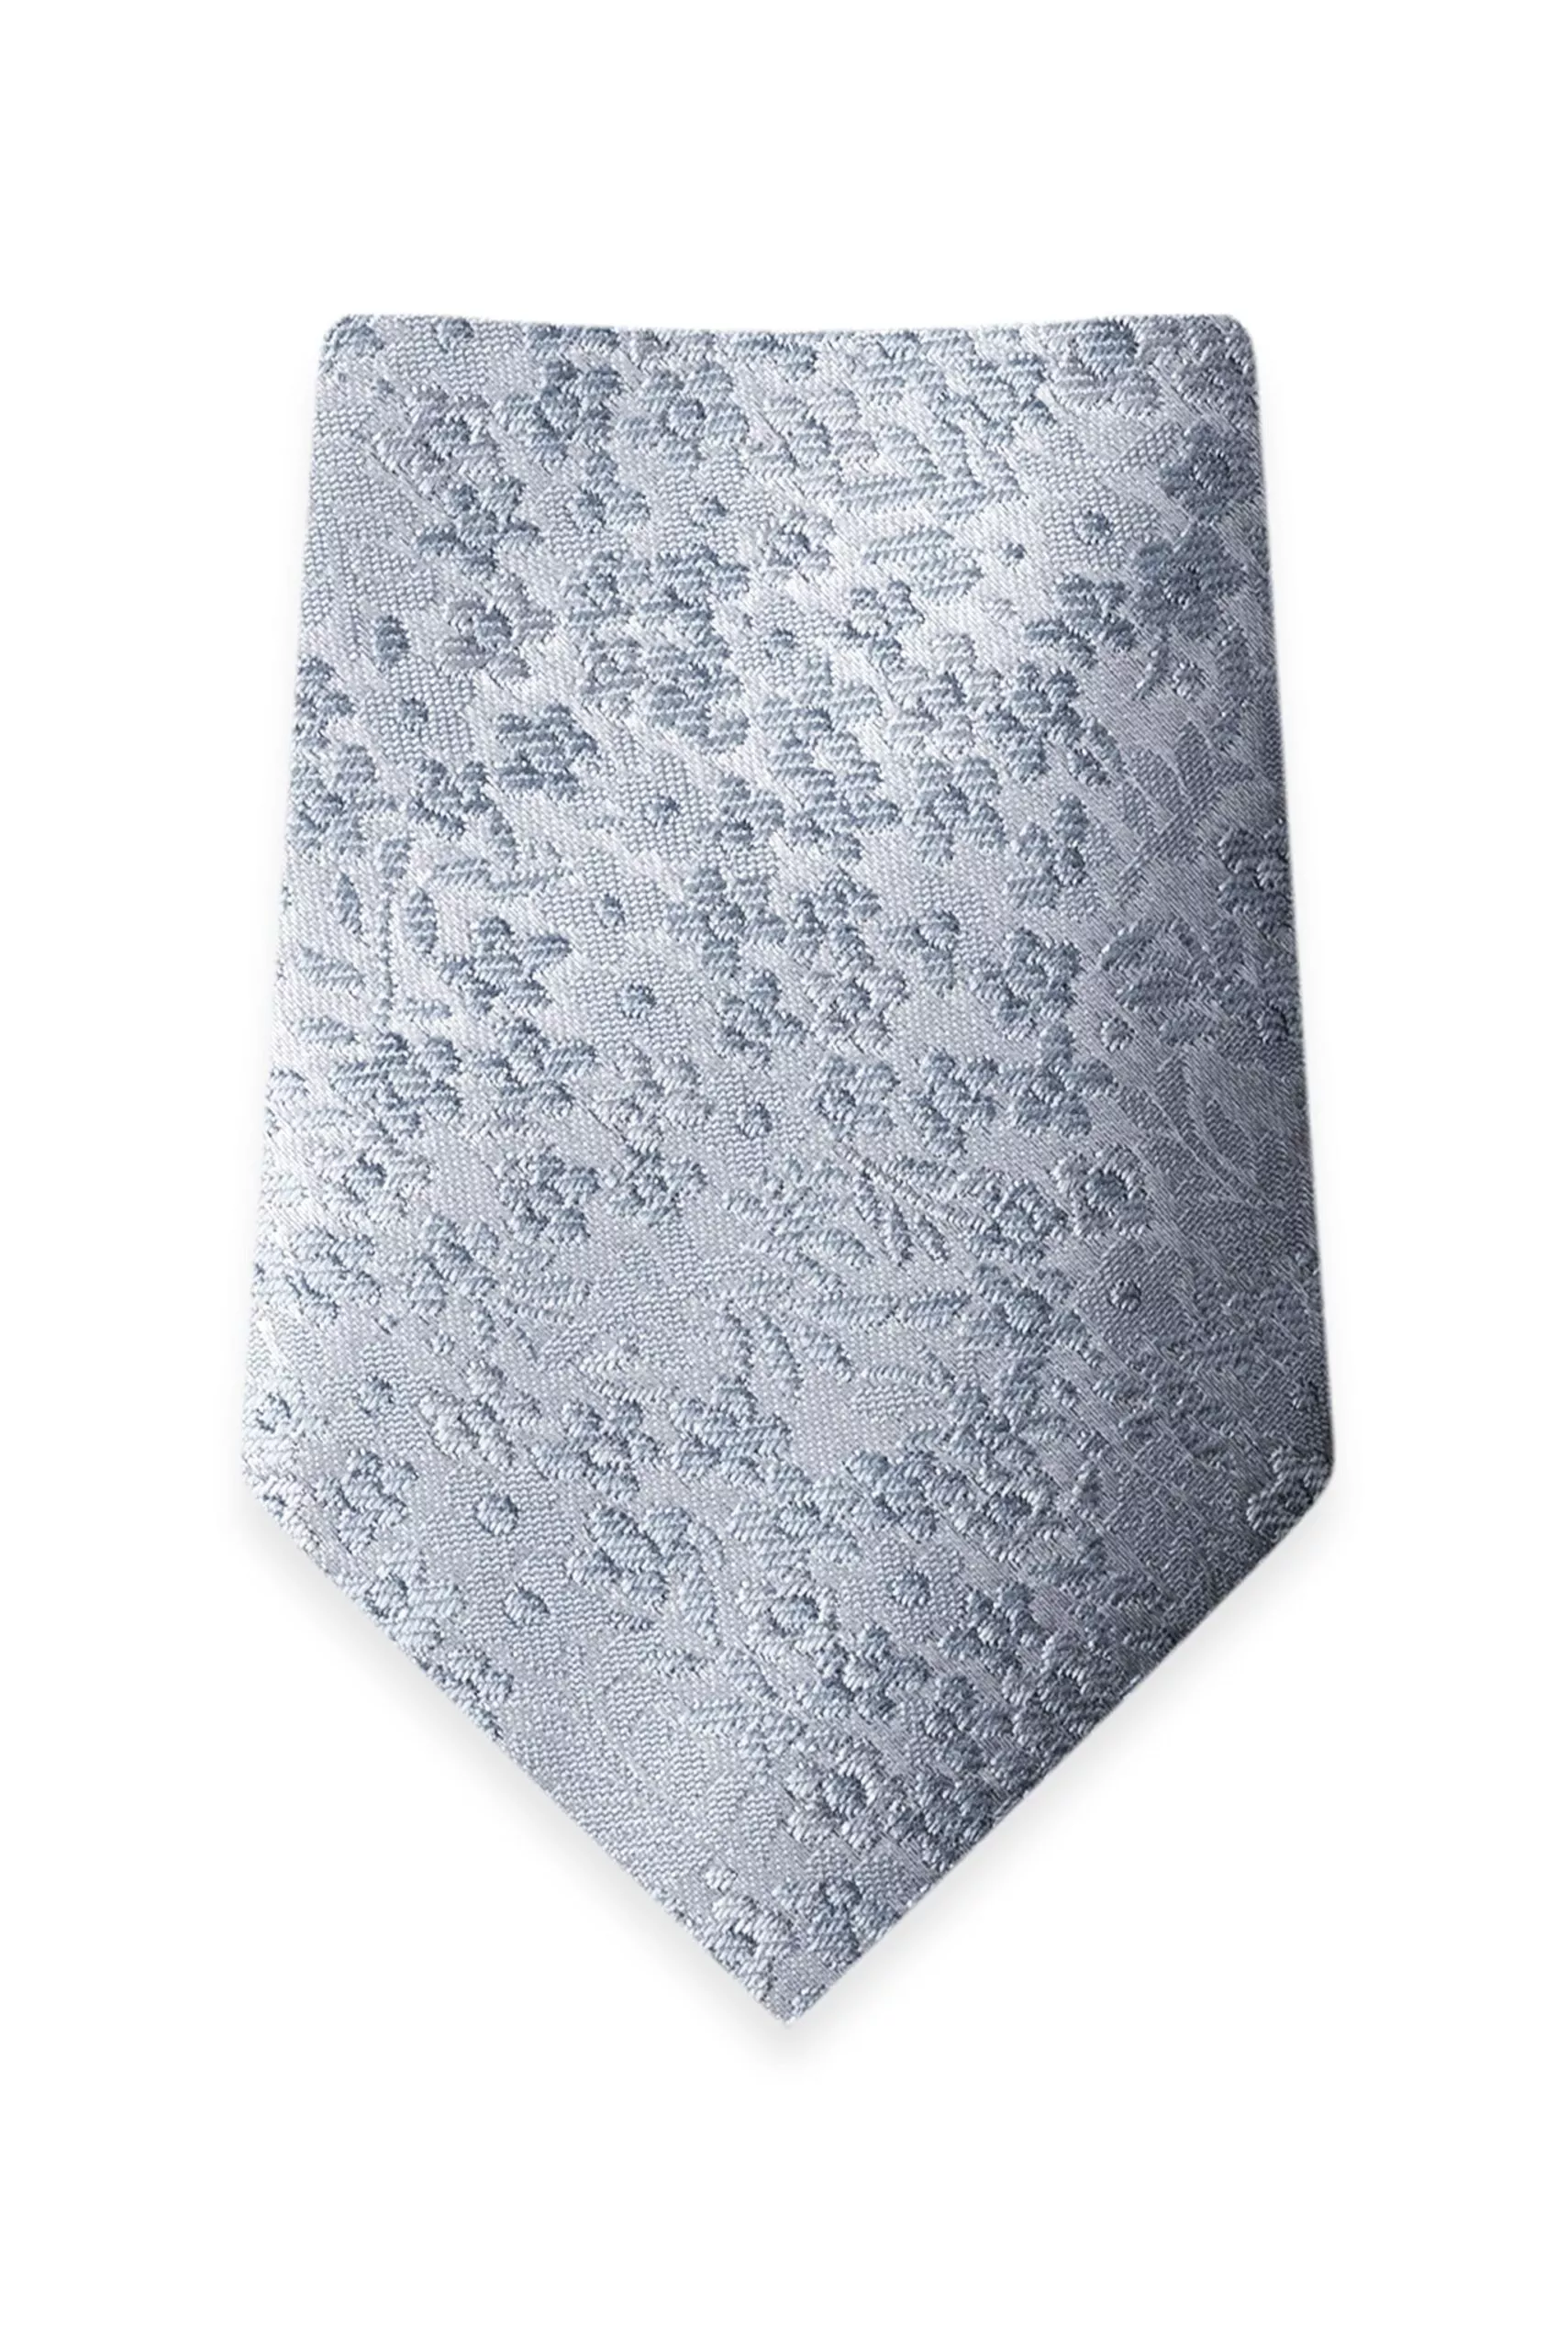 Floral Dusty Blue Self-Tie Windsor Tie 1